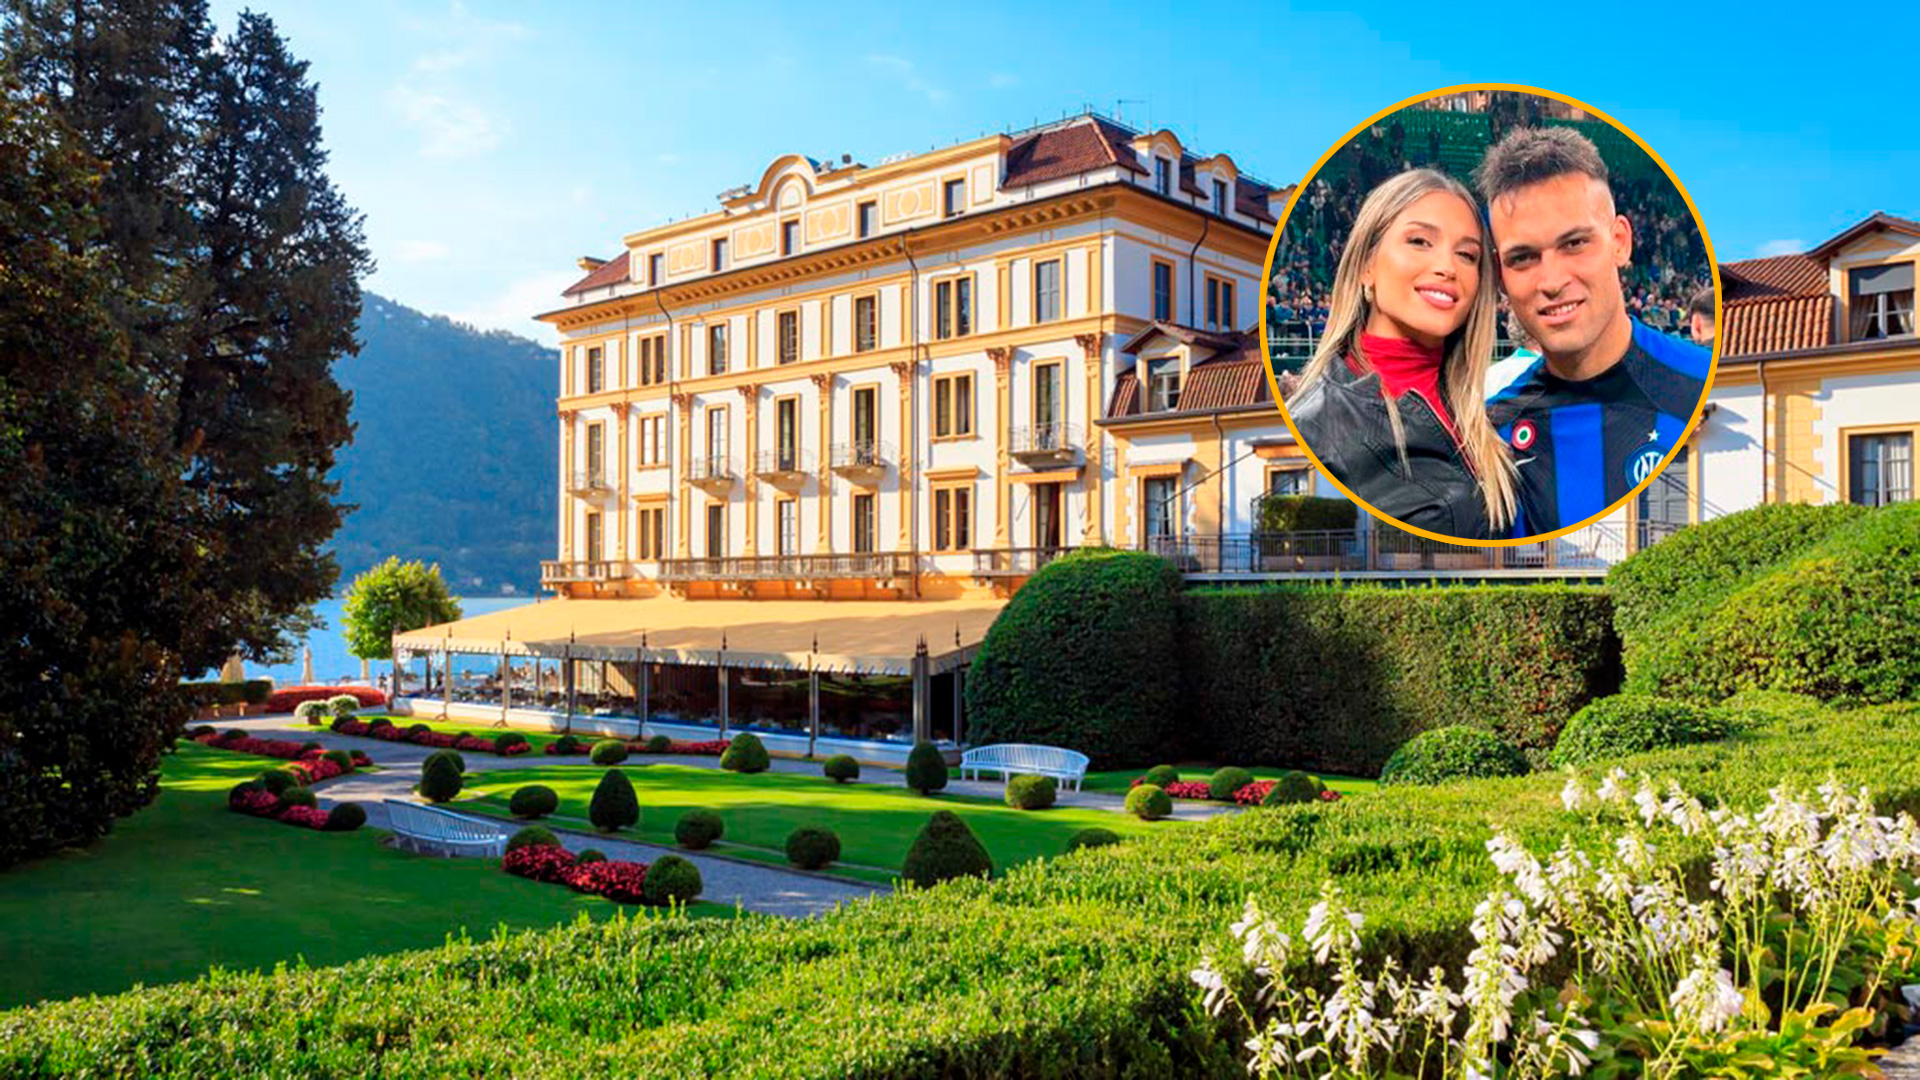 Los detalles de la lujosa boda de Lautaro Martínez y Agustina Gandolfo: así es el imponente hotel de la realeza que eligieron para la fiesta en lago de Como 